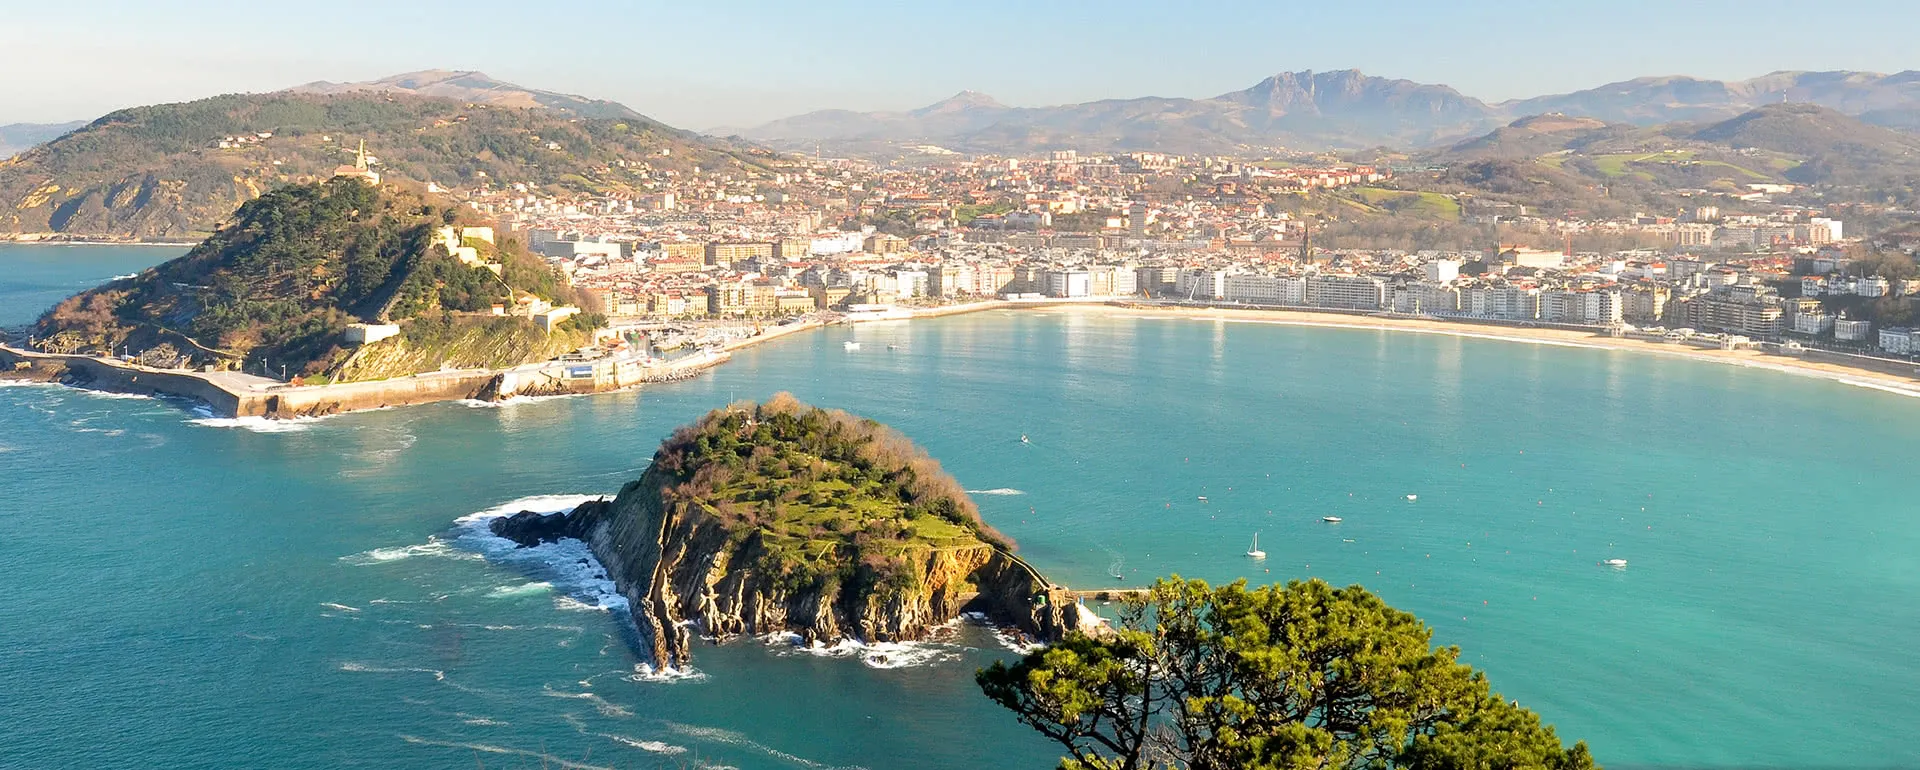 Donostia-San Sebastián - das Reiseziel mit Jugendherbergen